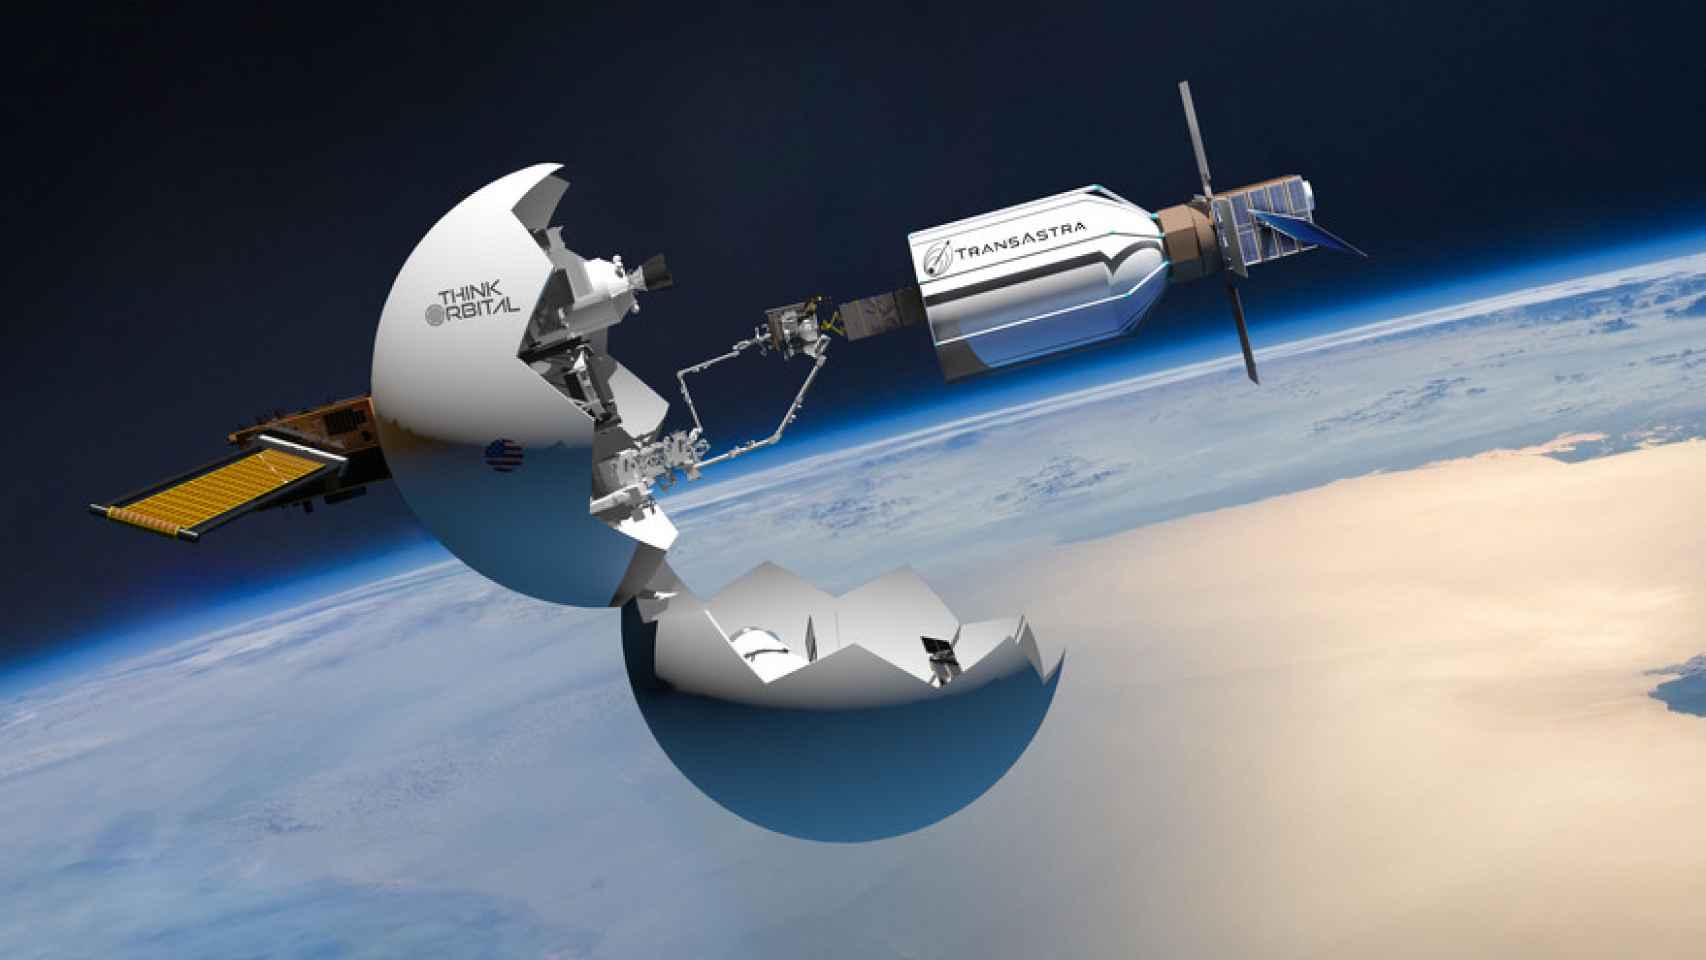 Sonda TransAstra pozostawia śmieci kosmiczne na platformie ThinkOrbital